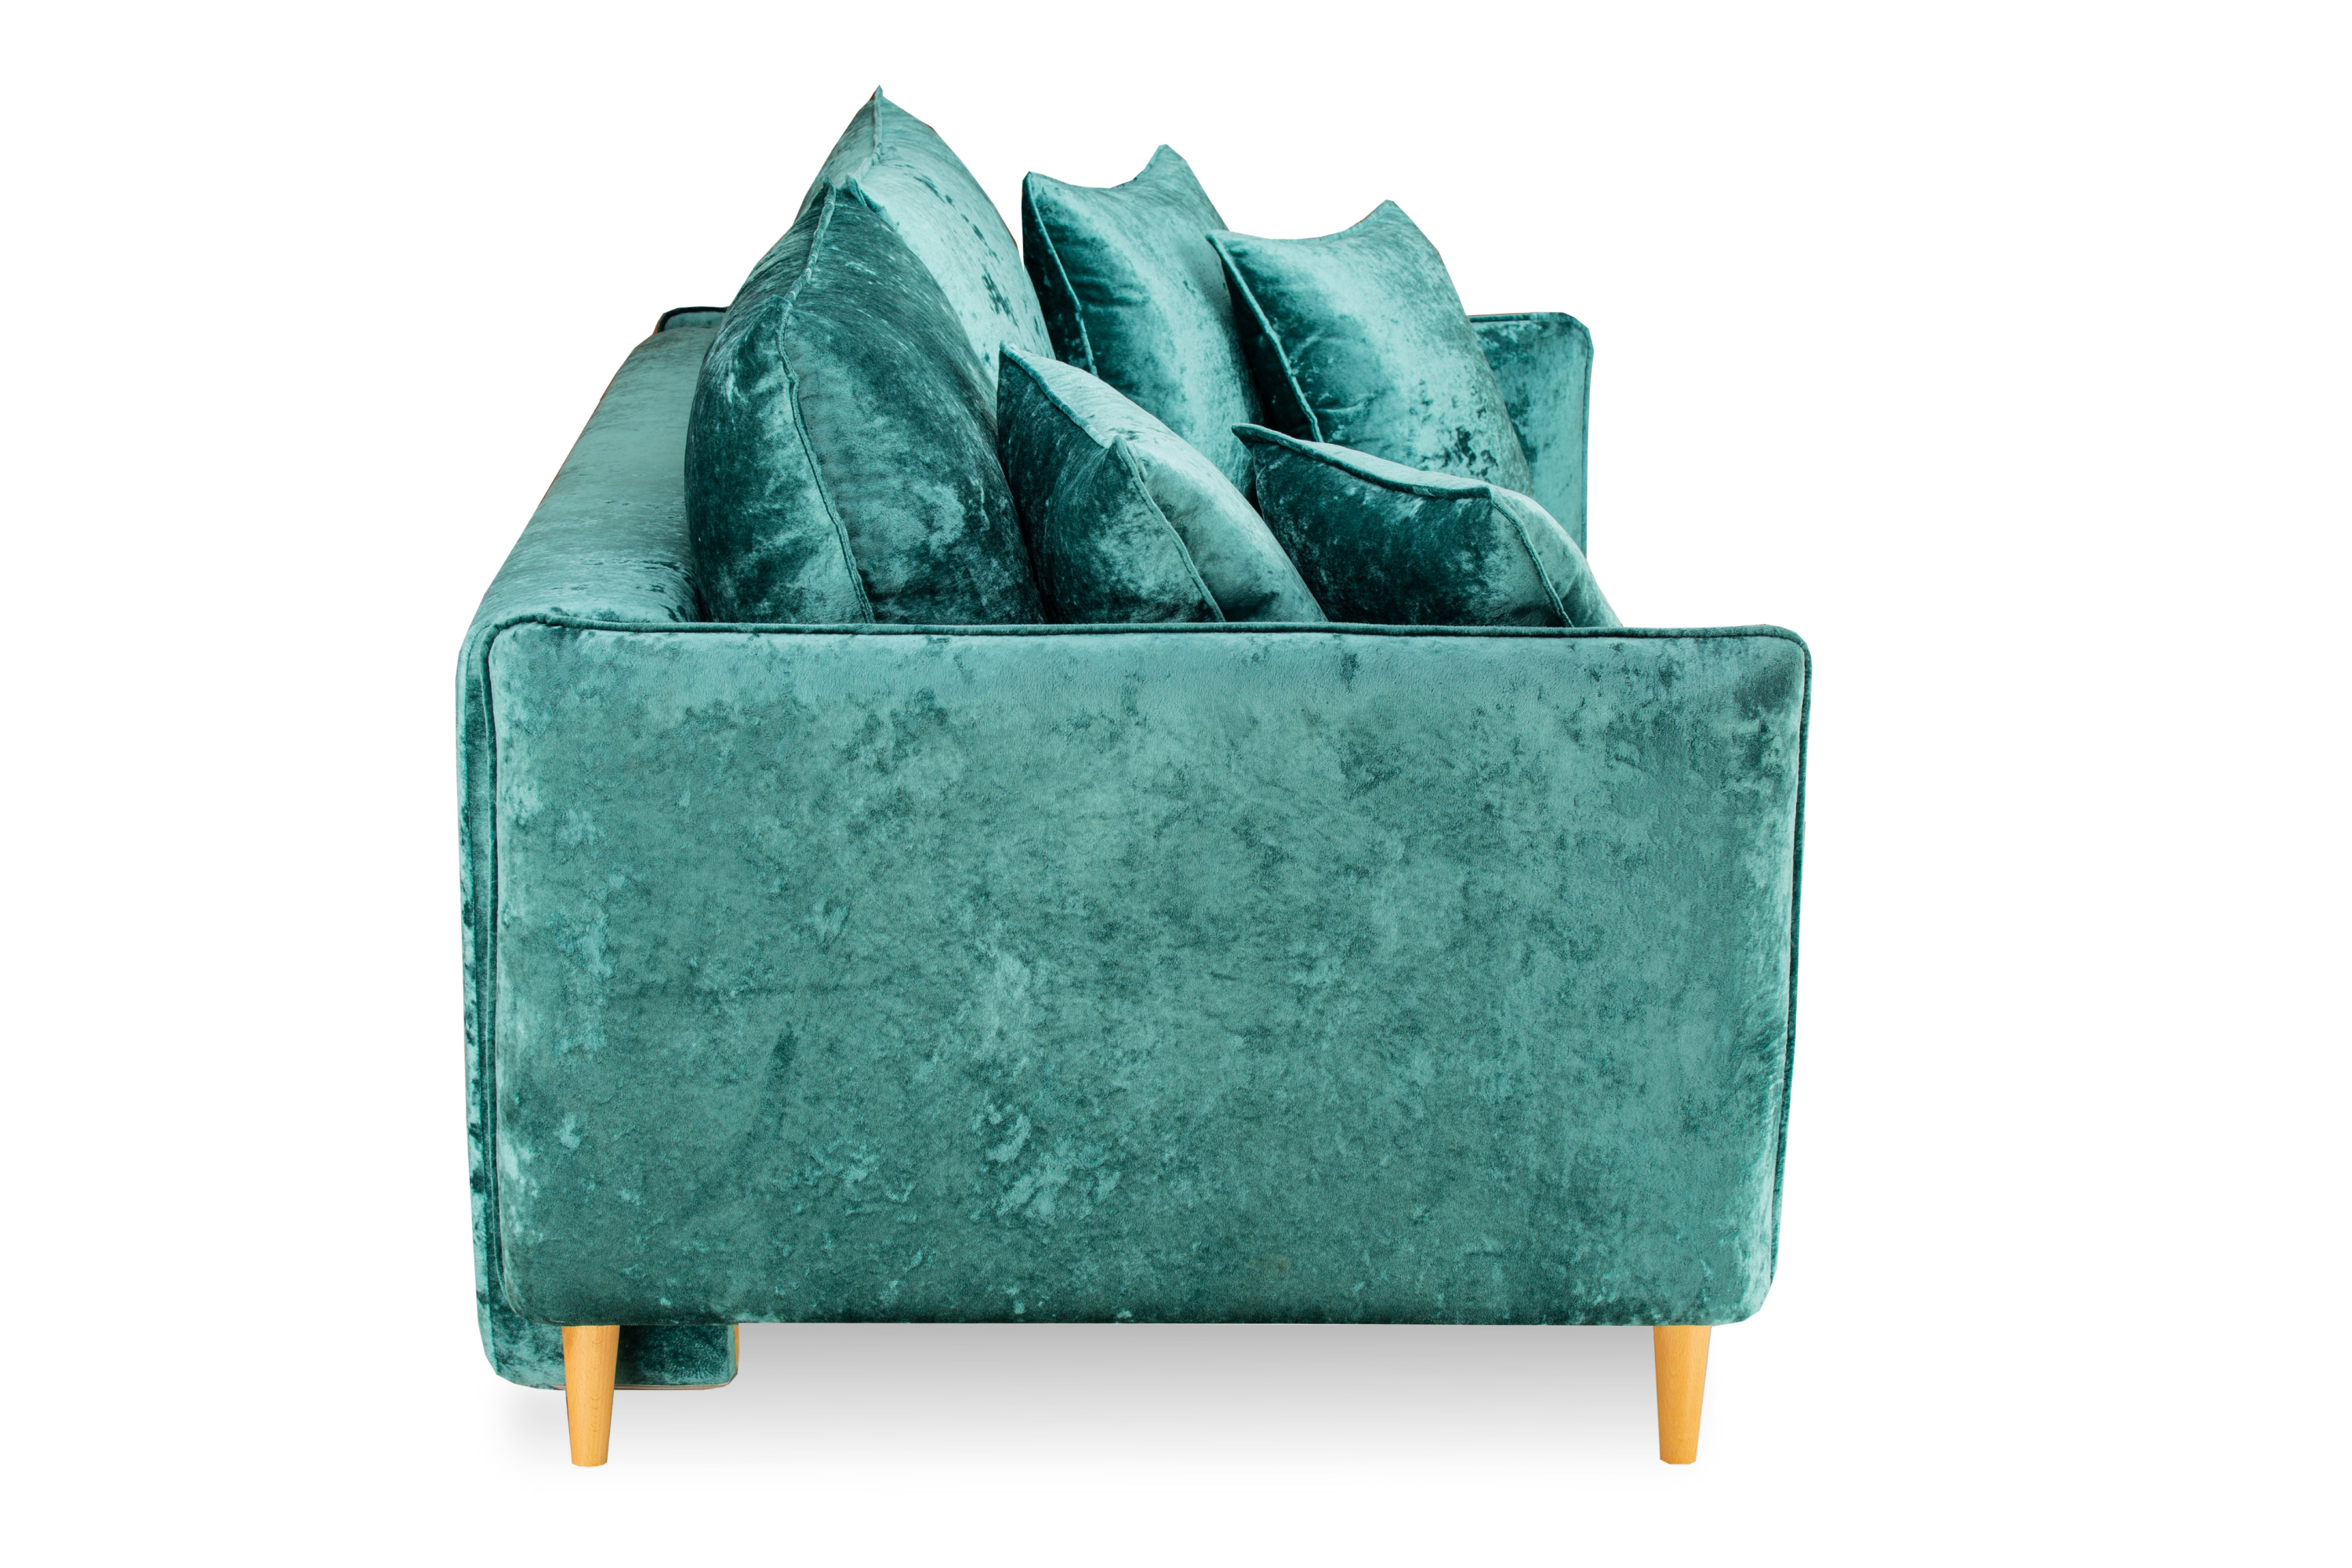 Фото Йорк Премиум диван-кровать плюш Мадейра азур 4